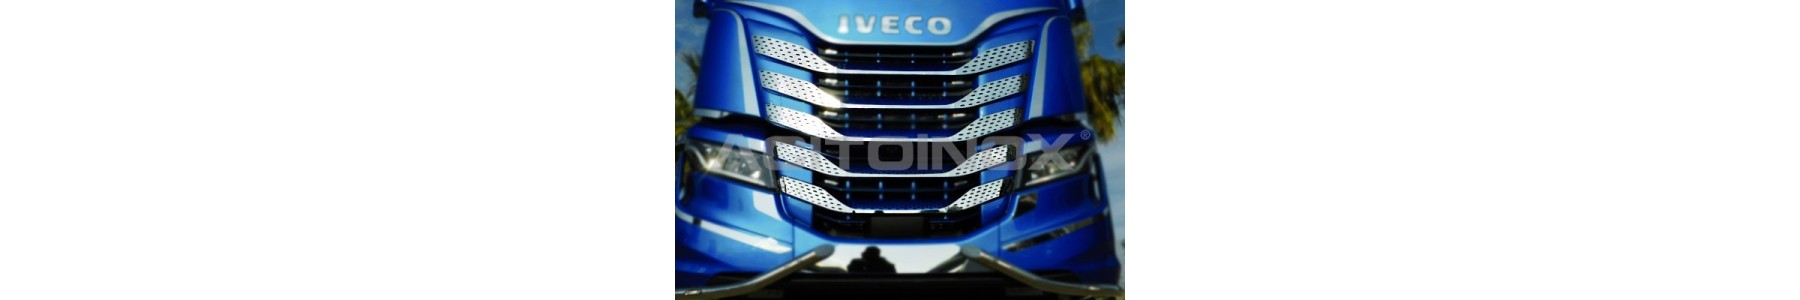 22h22 - Habillage inox pour poids-lourds Iveco S-WAY